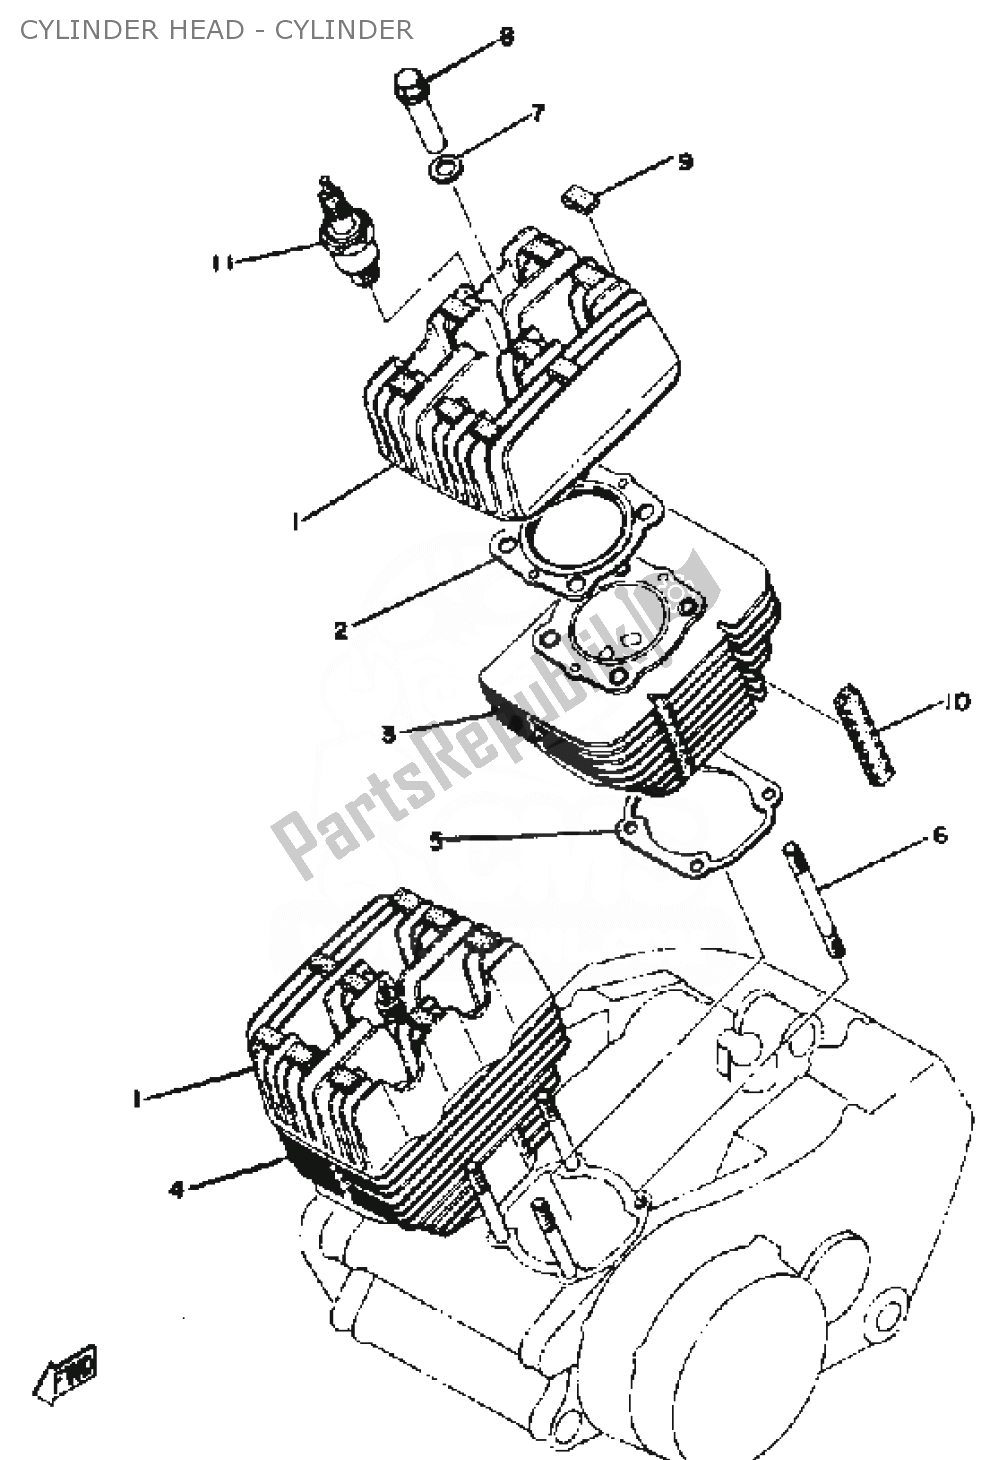 Alle onderdelen voor de Cylinder Head - Cylinder van de Yamaha RD 400 1976